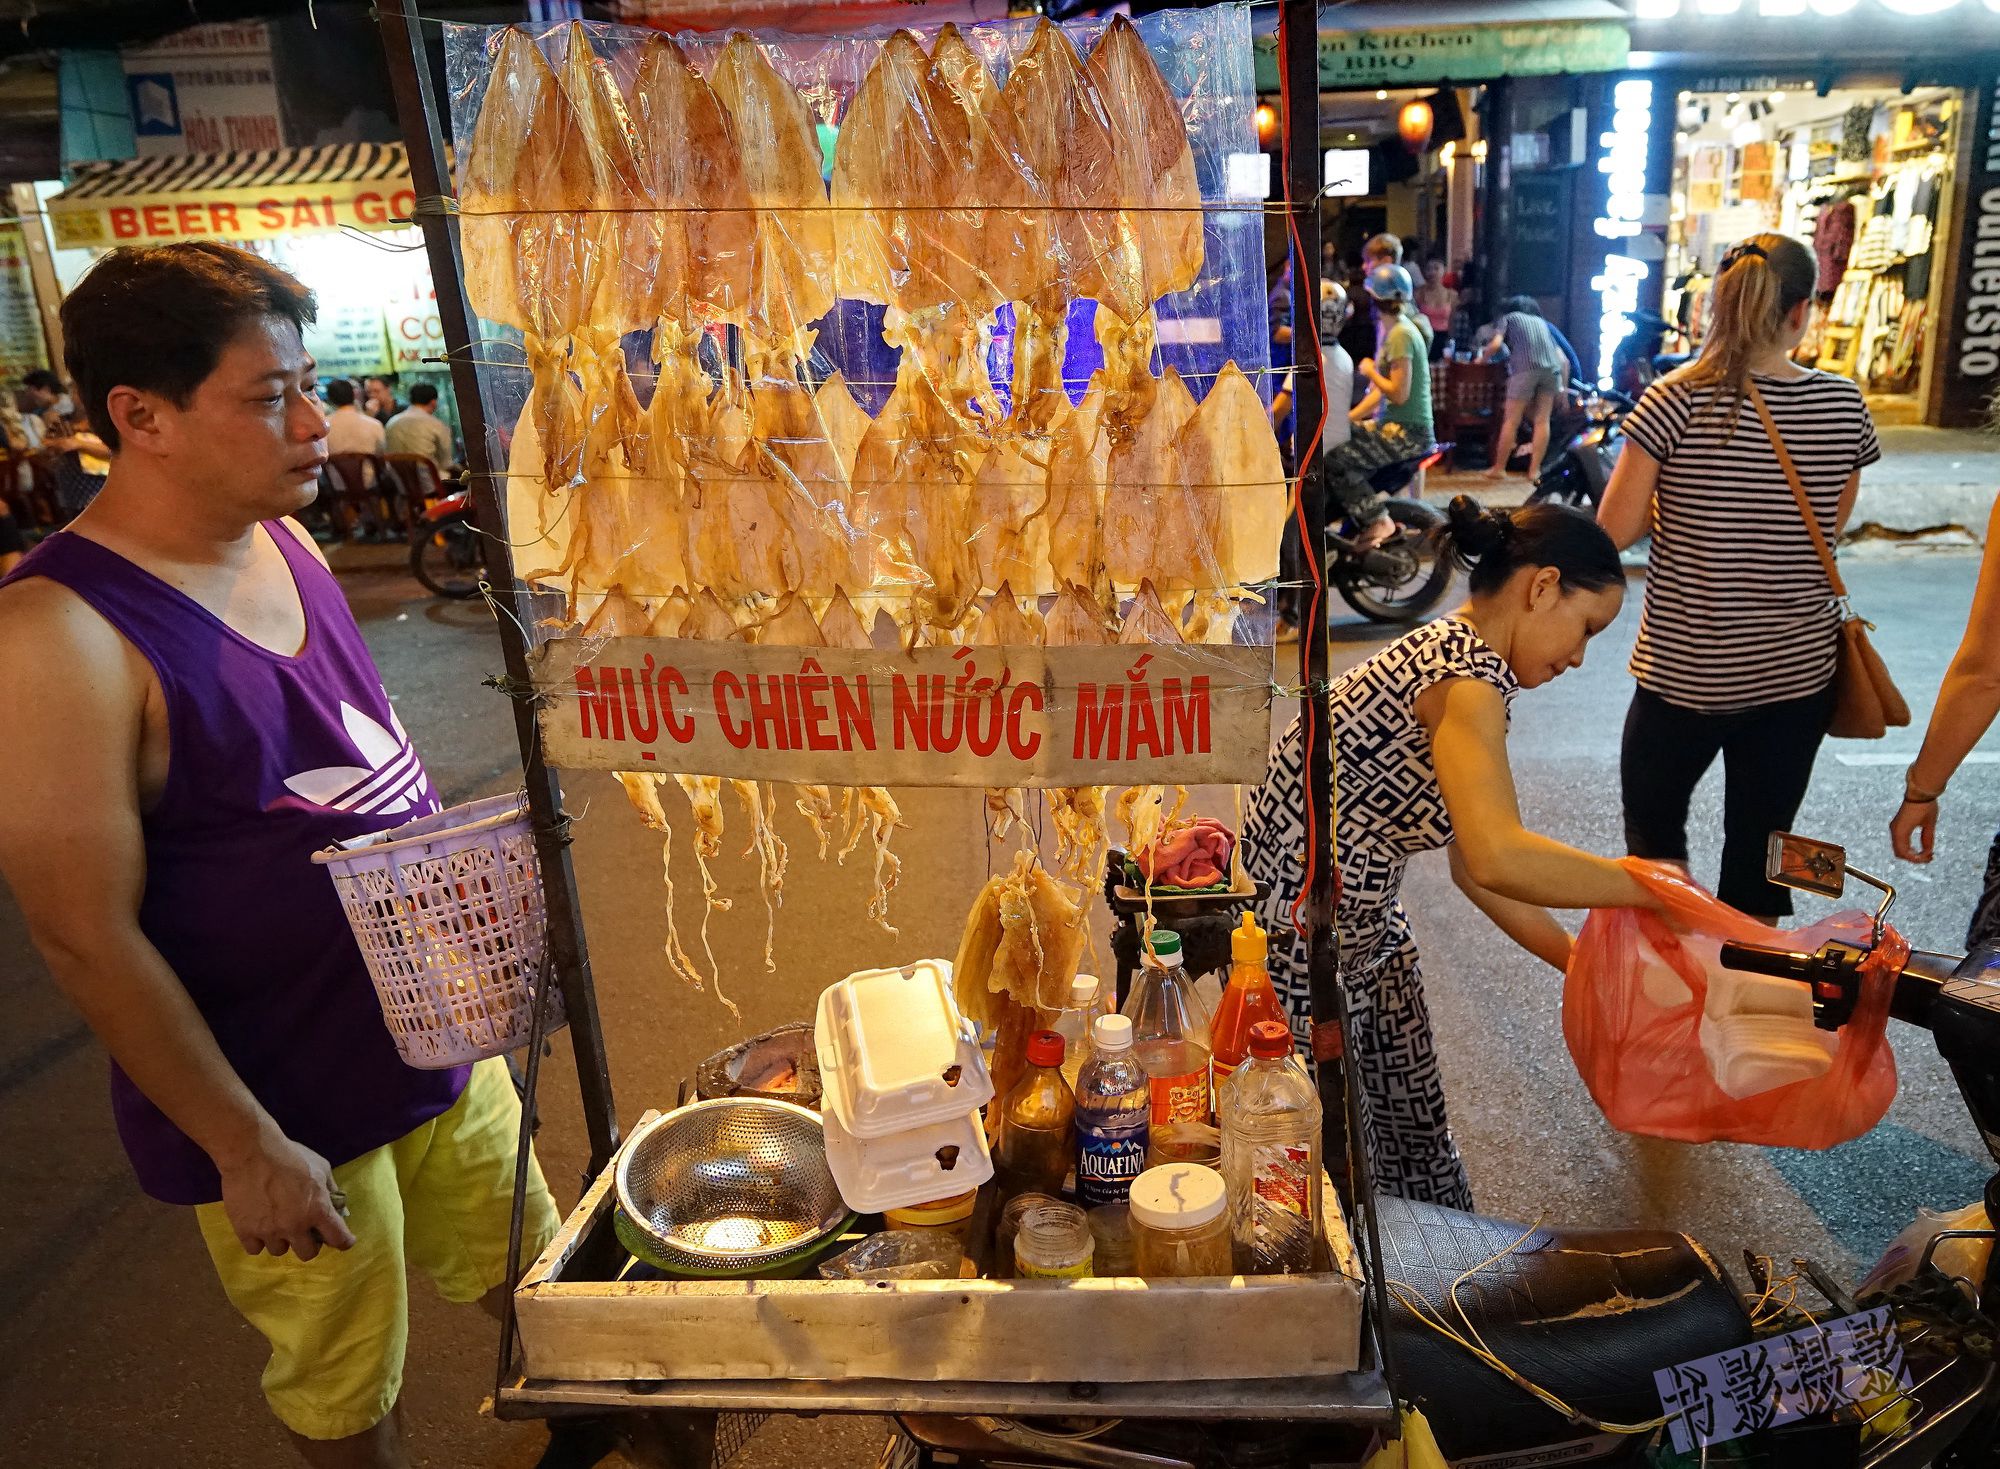 炸鱿鱼与滴漏咖啡,越南有什么值得留恋?